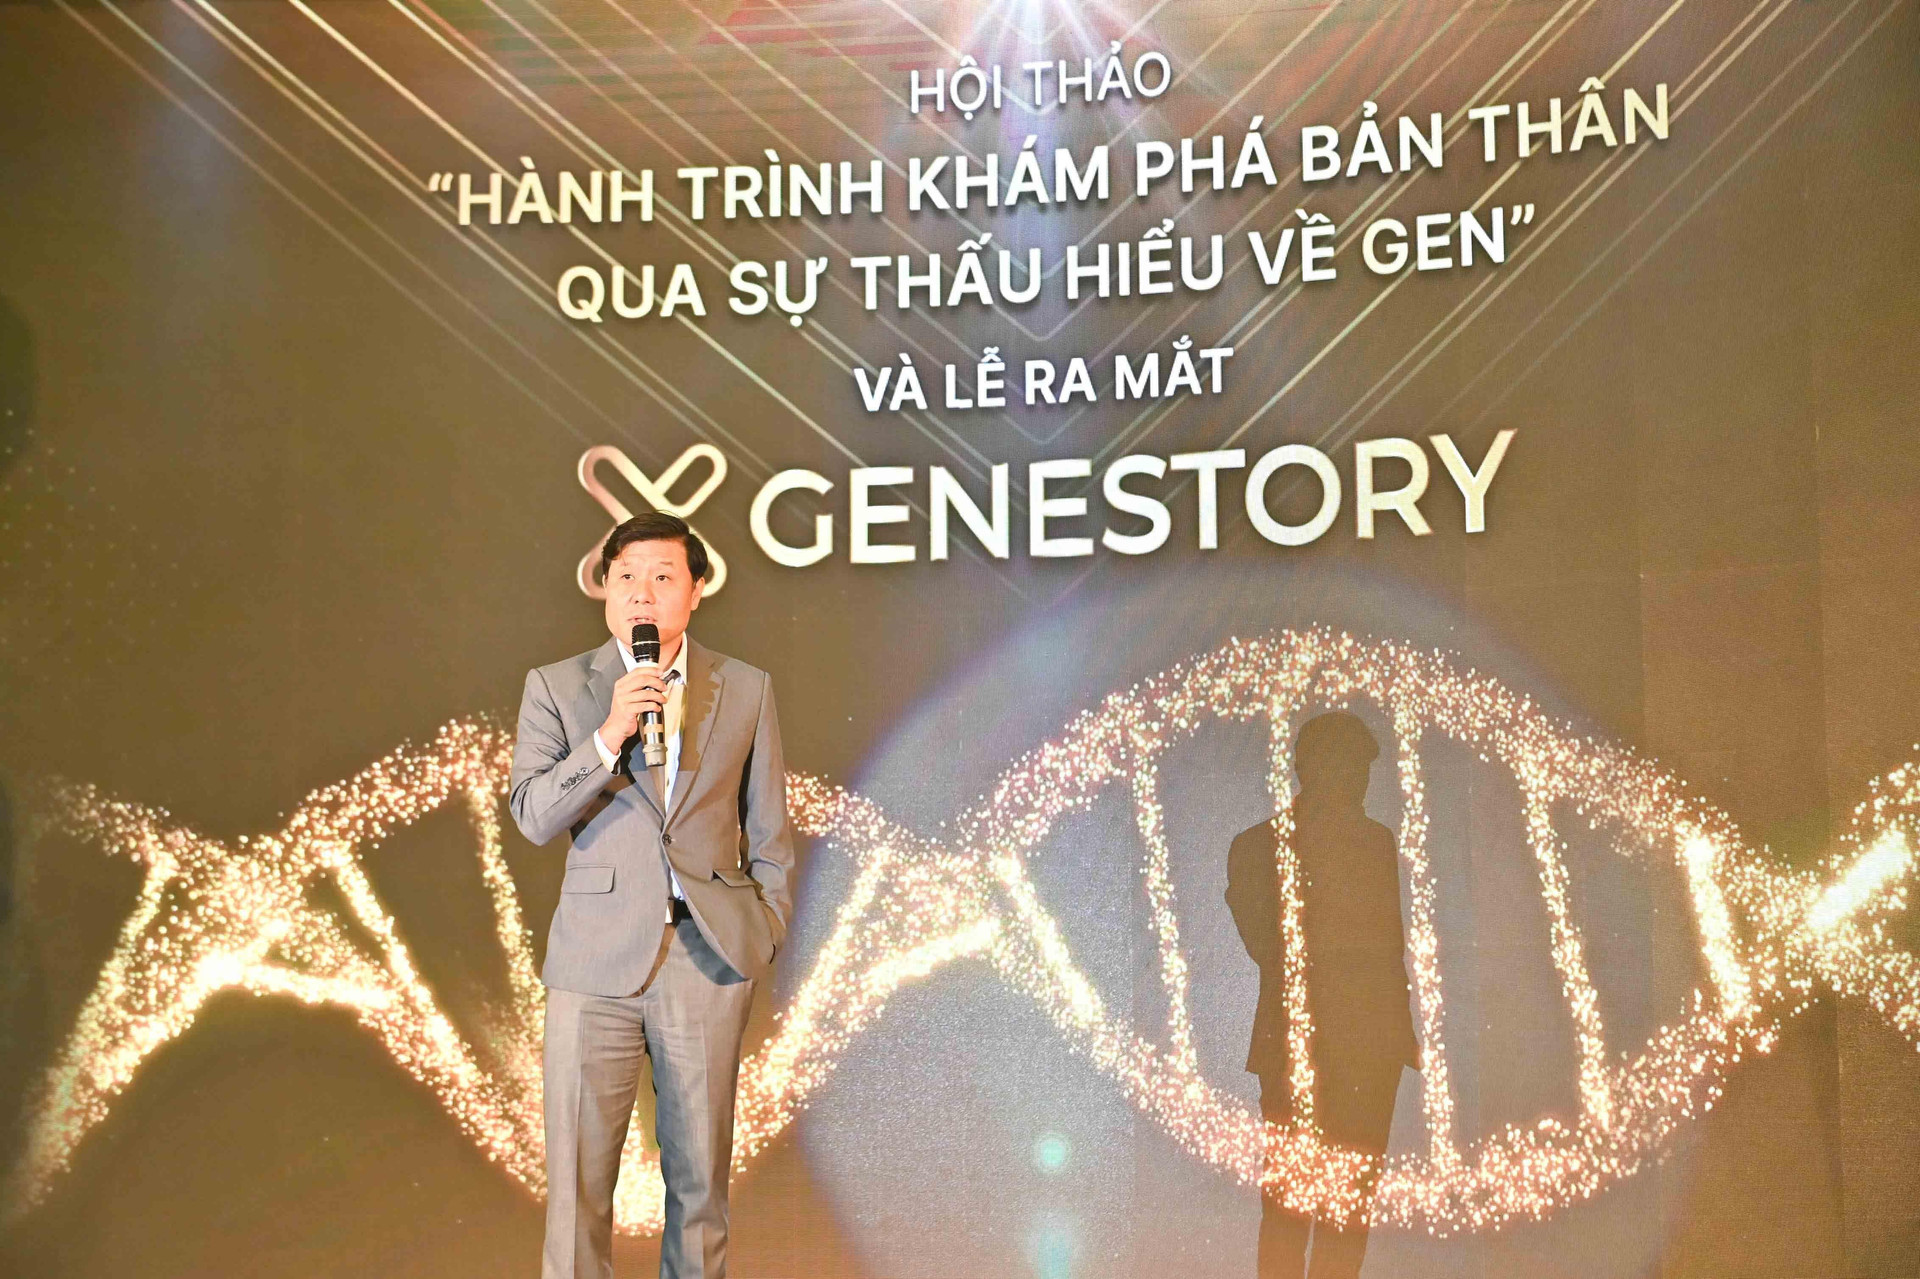 Ra mắt Công ty GeneStory cung cấp dịch vụ giải mã gene cho người Việt - 1